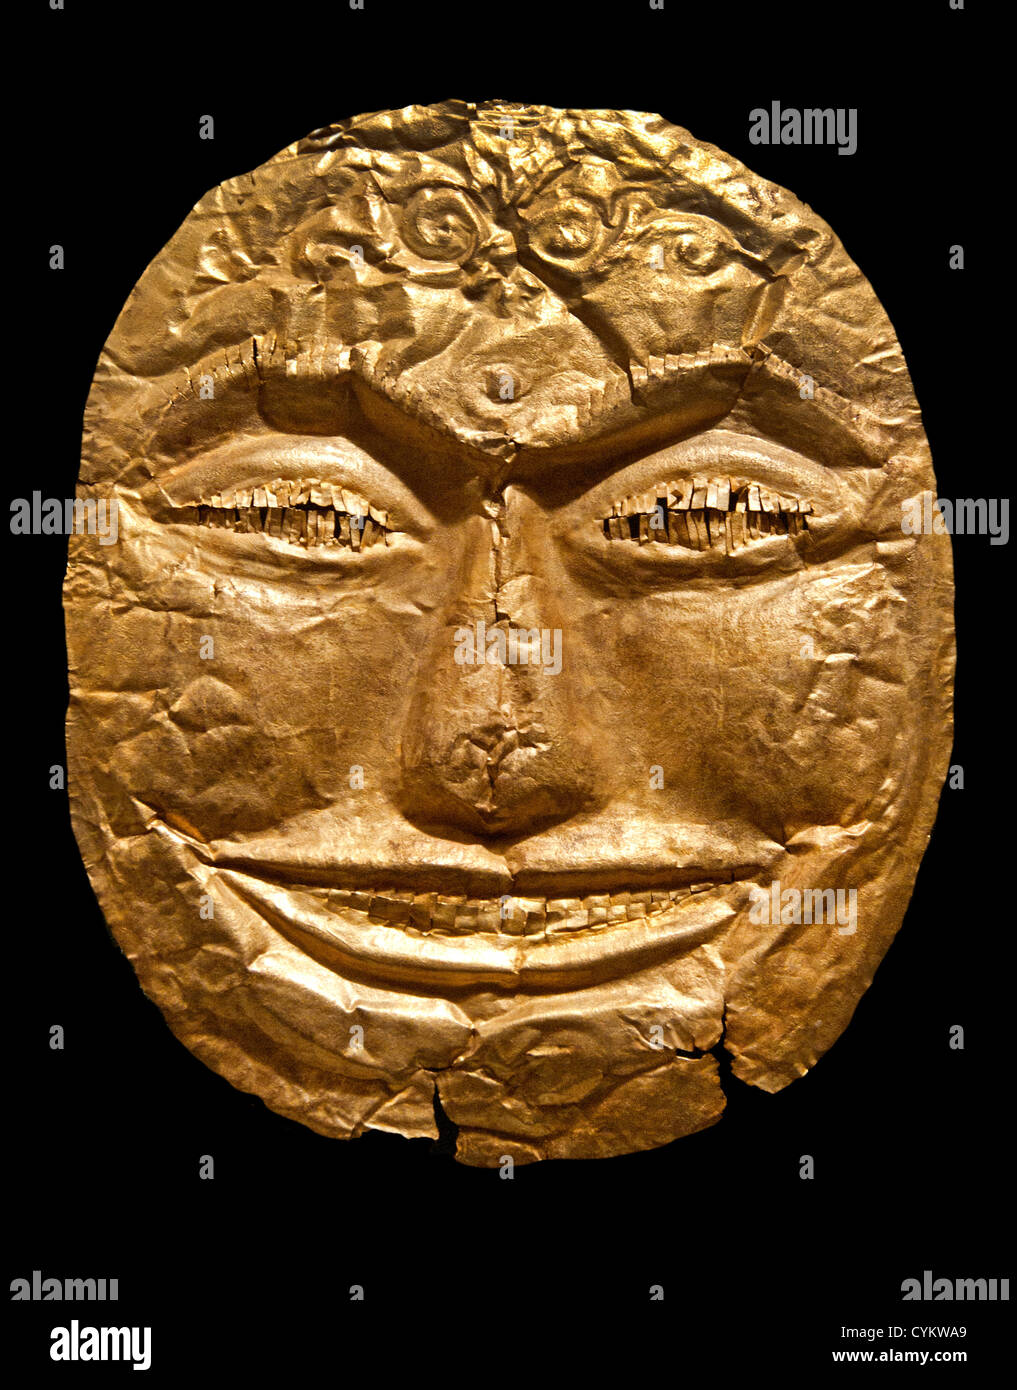 Masque funéraire du 14ème siècle de l'Est javanais Majapahit Java Indonésie Gold 19 cm Banque D'Images